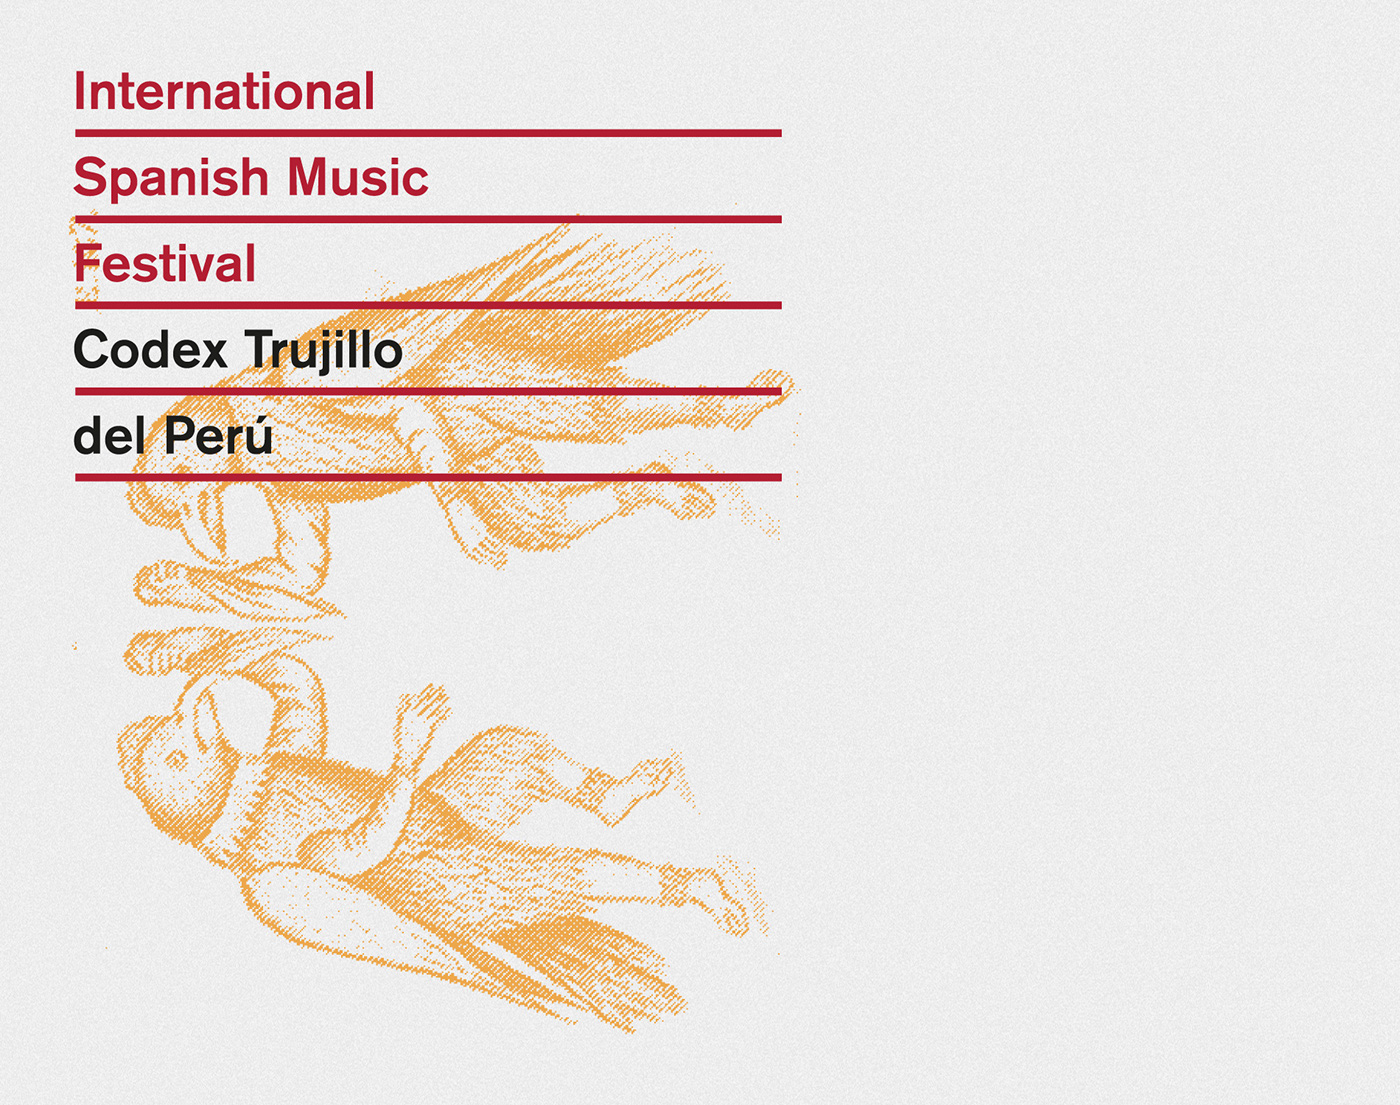 festival Music Festival spanish music sephardic music red yellow